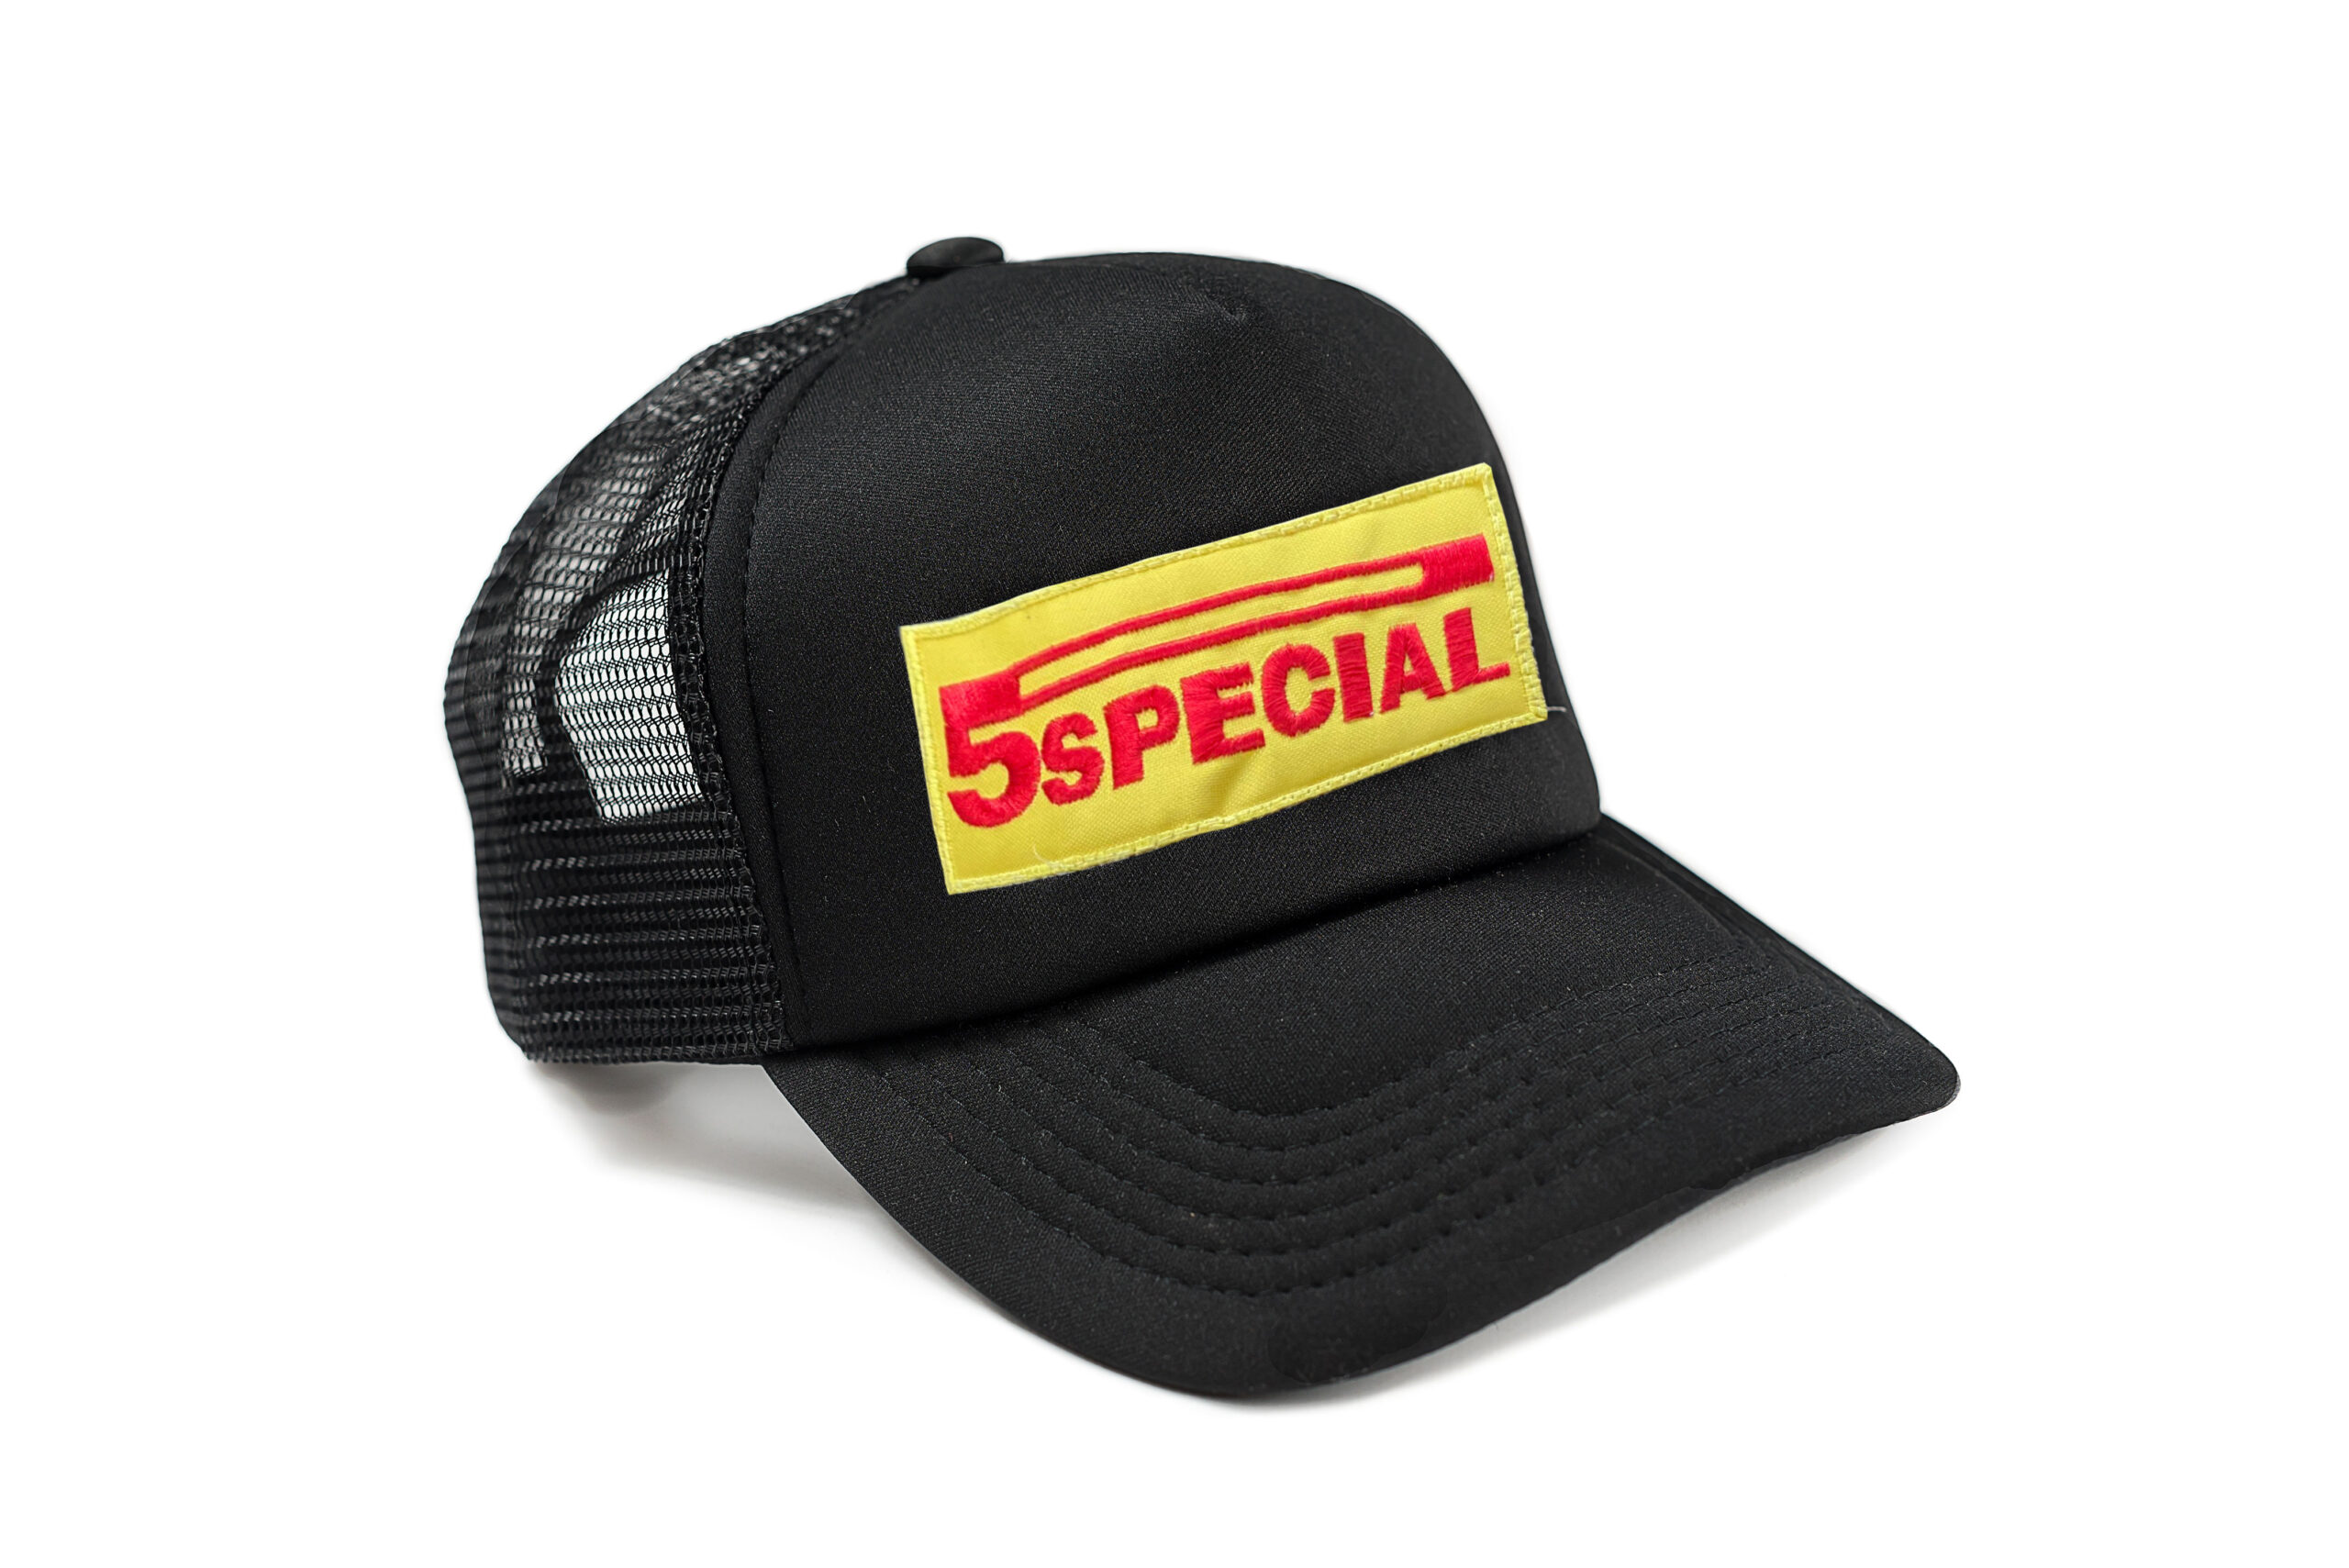 podium-5special-cap-black